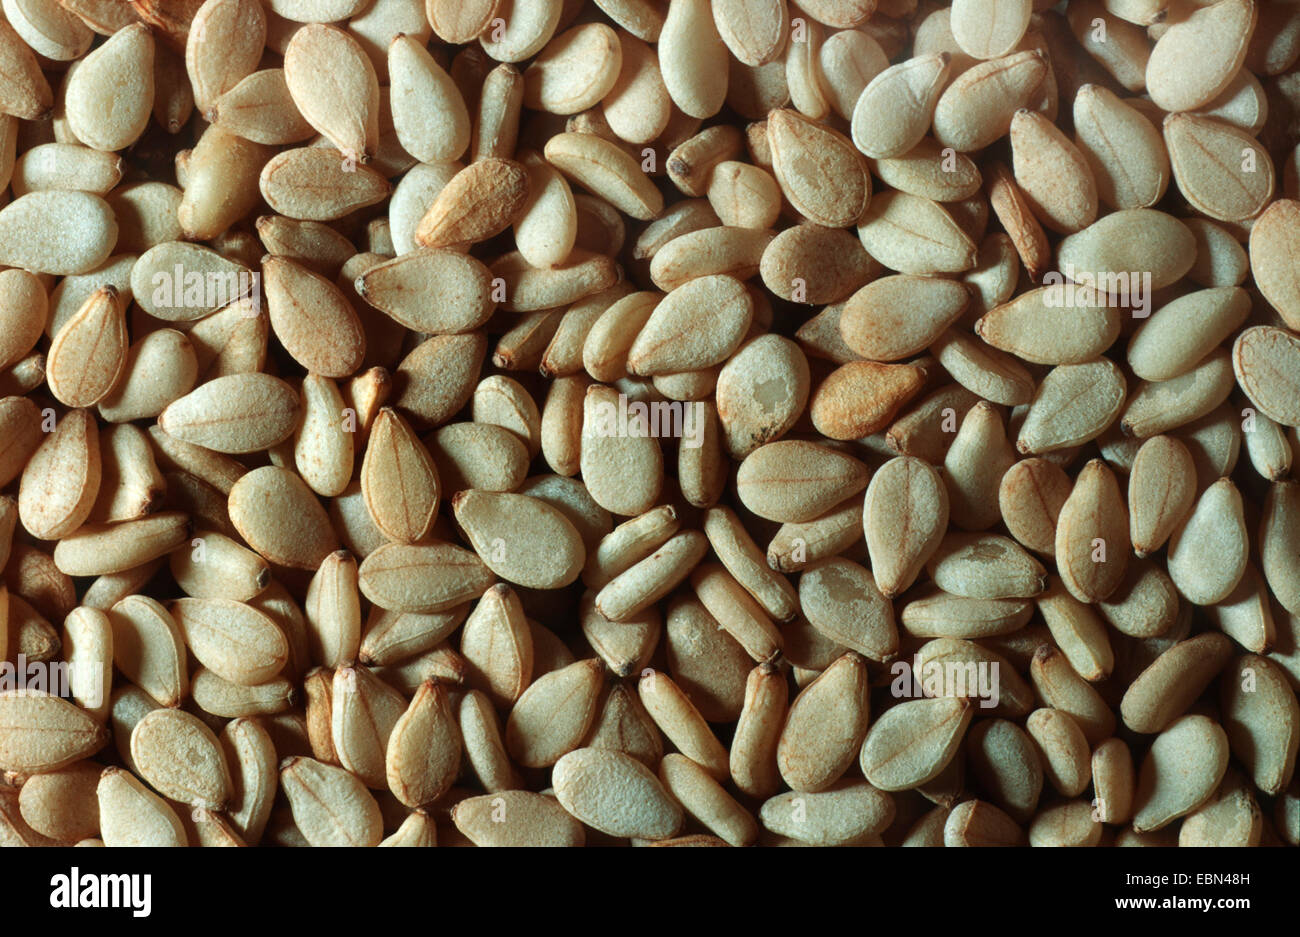 sesamum, sesame (Sesamum indicum), seeds Stock Photo